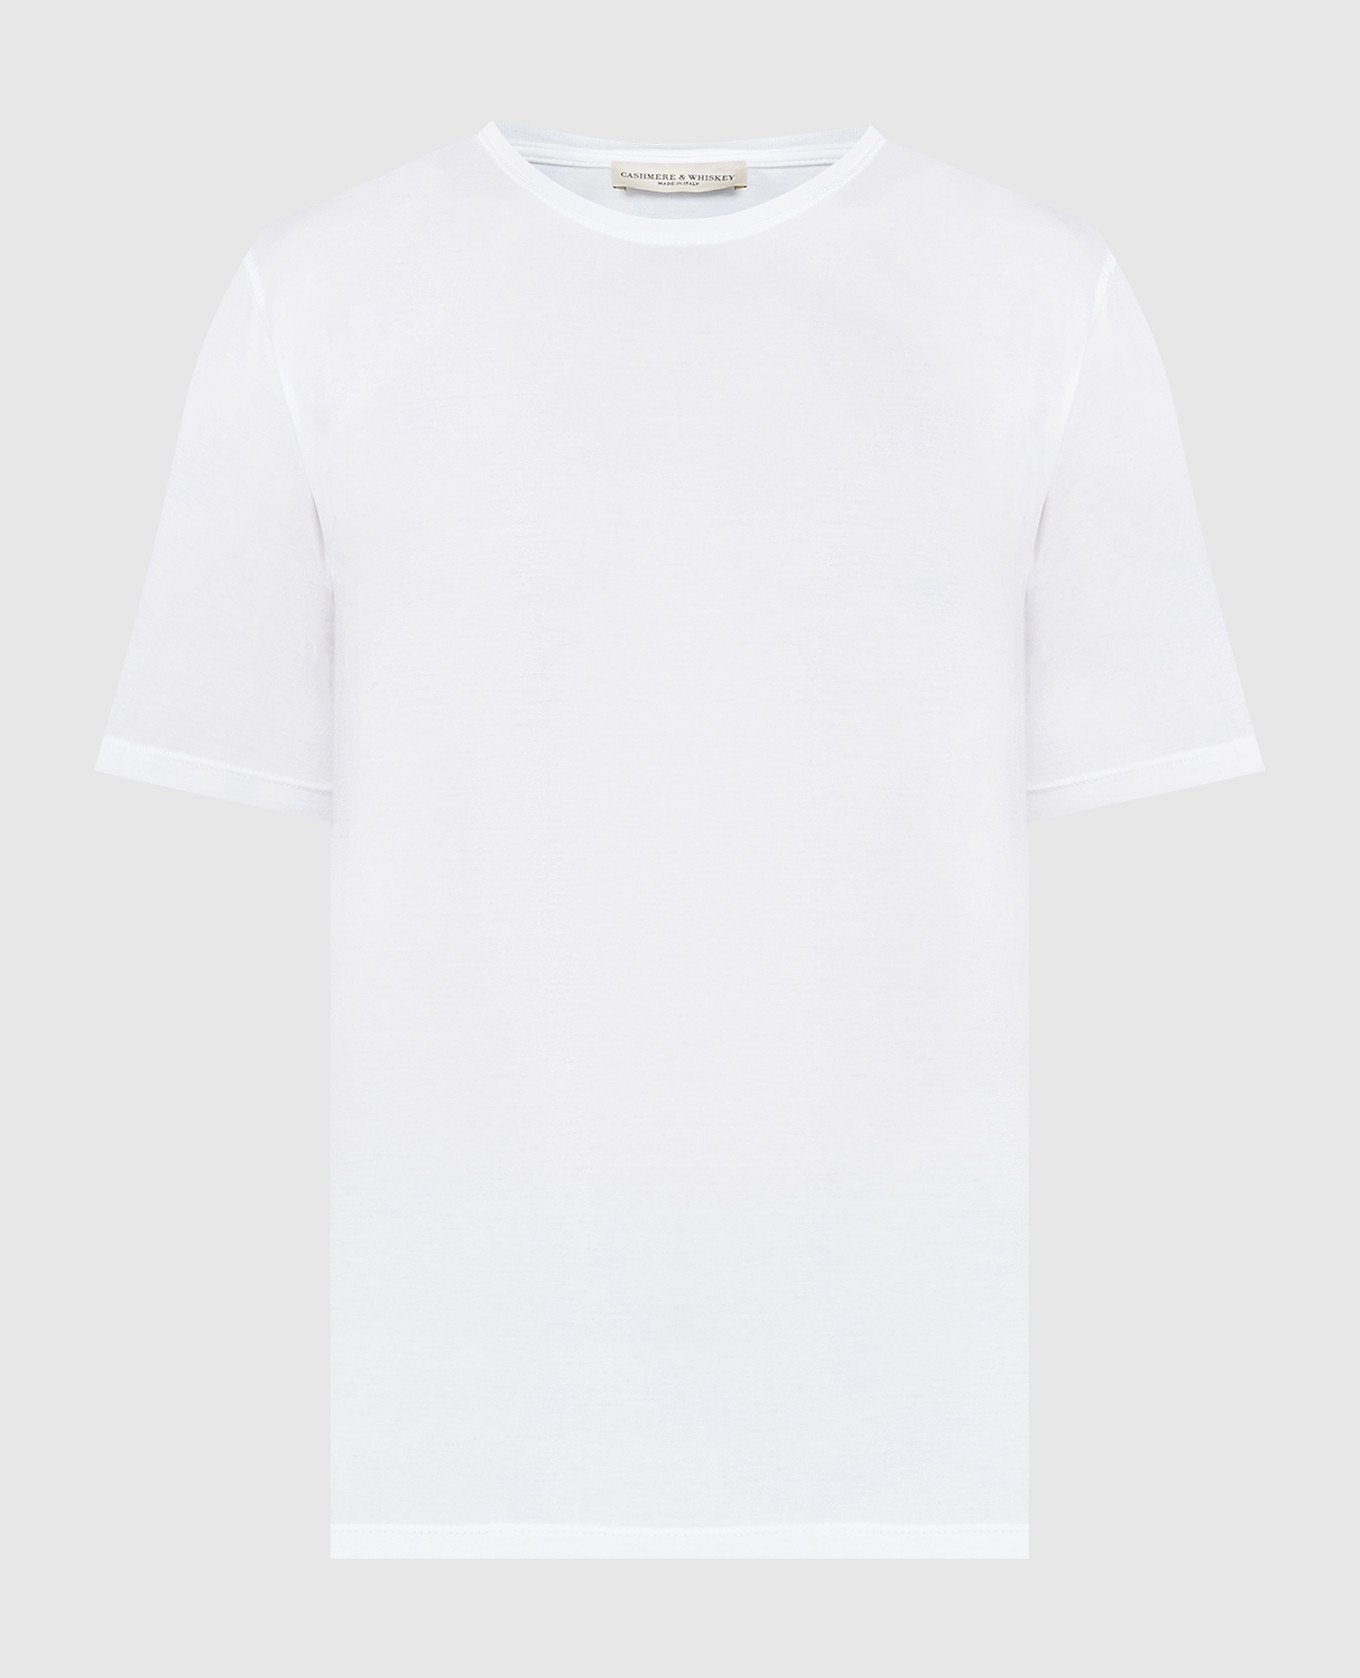 White T-shirt